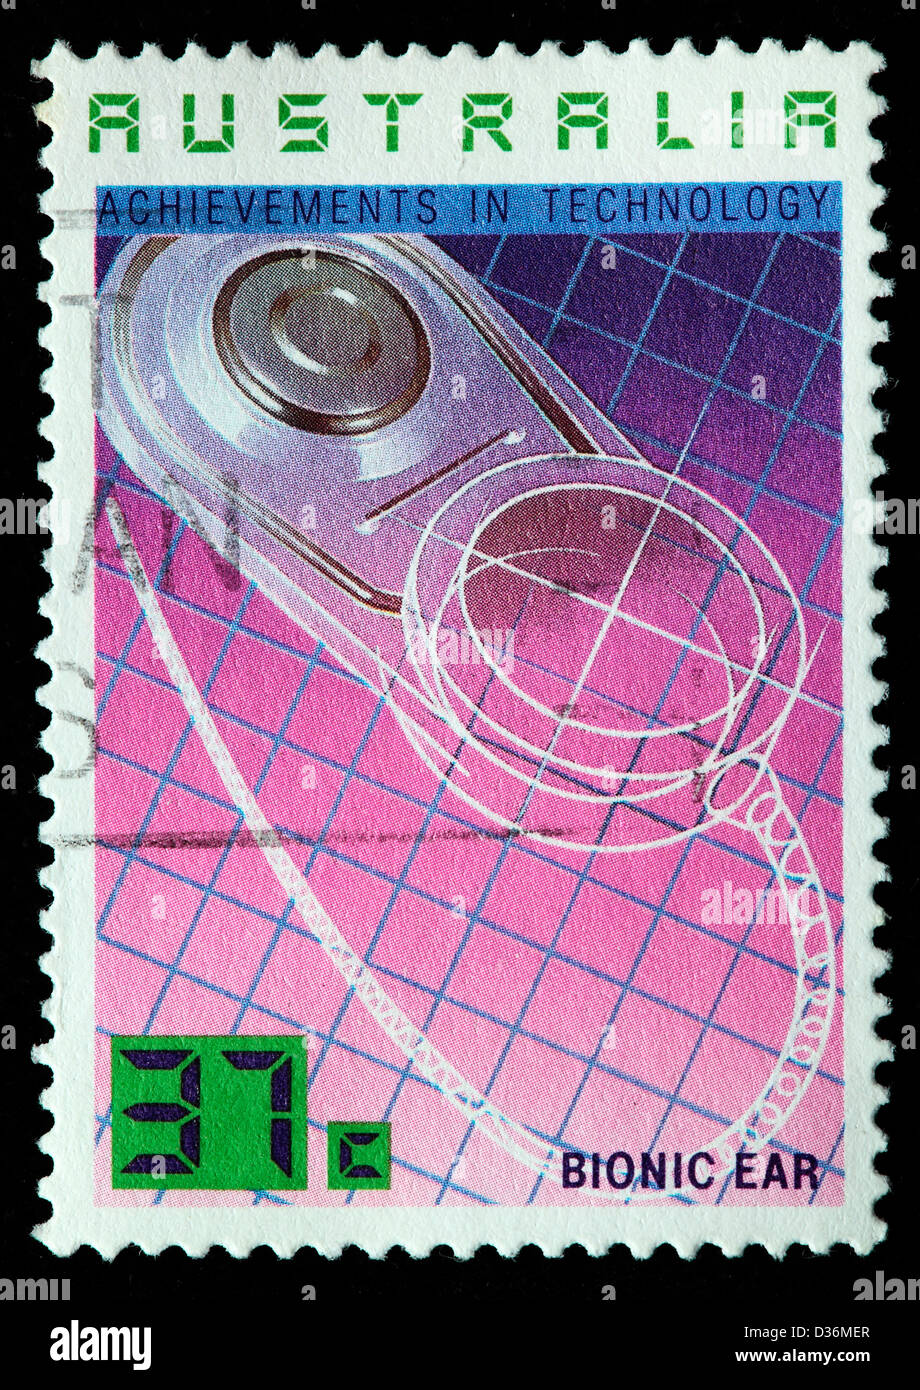 Technologie, Bionic Ear, Briefmarke, Australien, 1987 Stockfoto